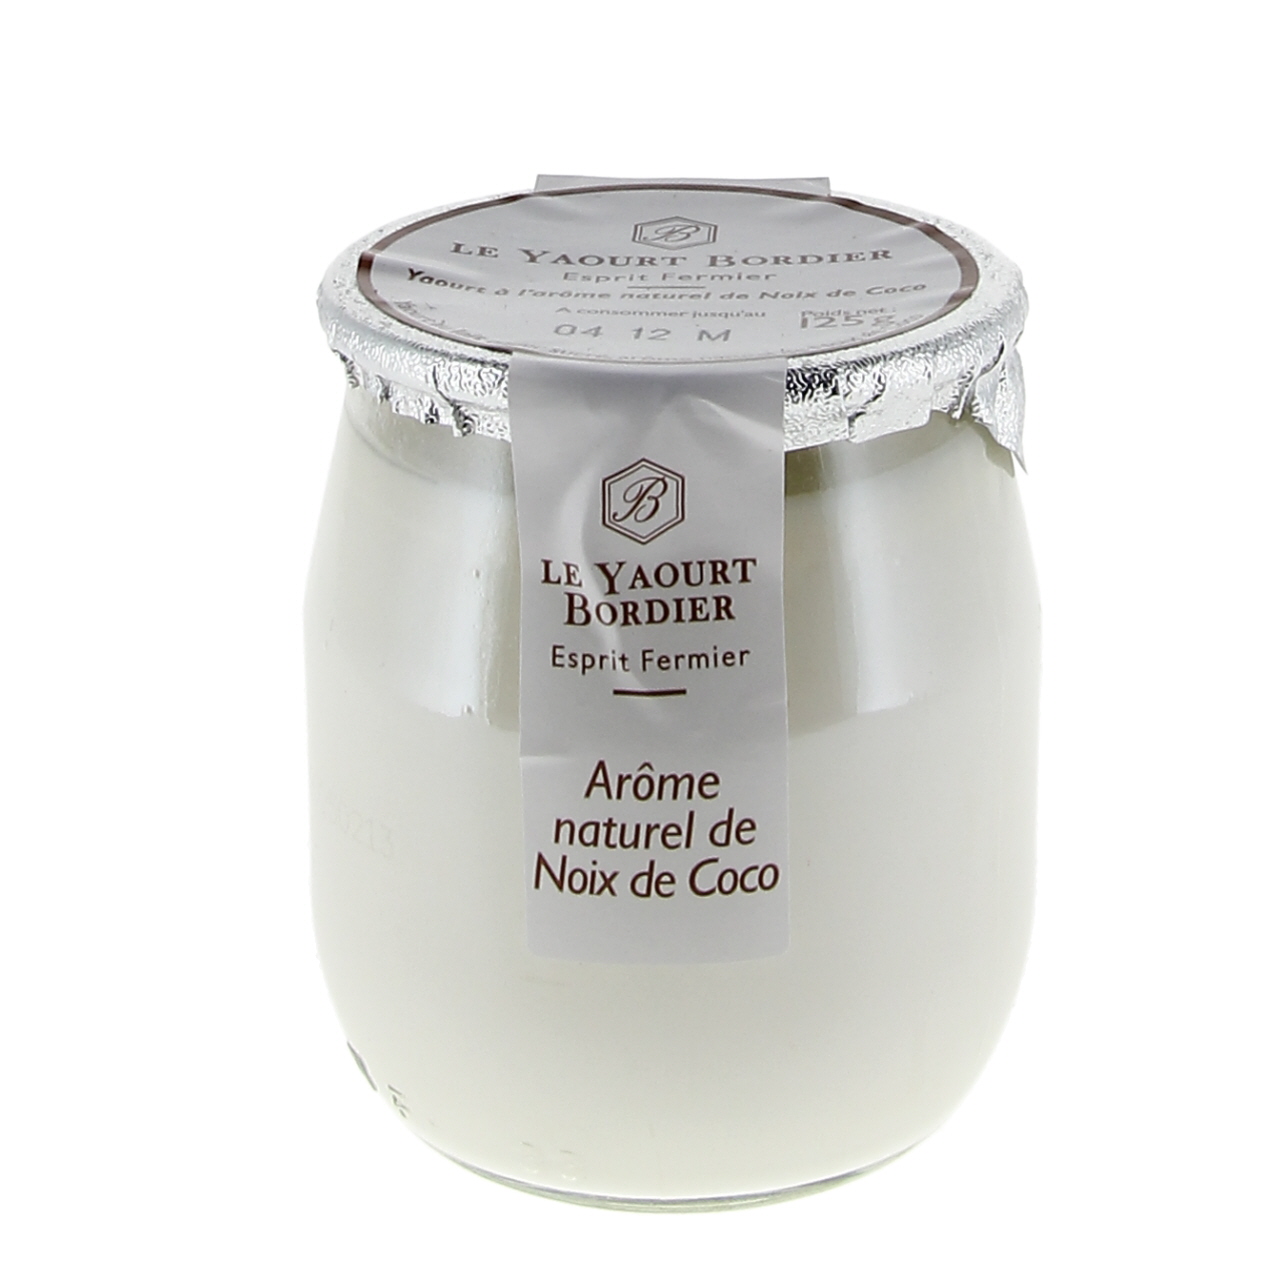 1 Yaourt arôme naturel noix de coco (LYCEE AGRICOLE)